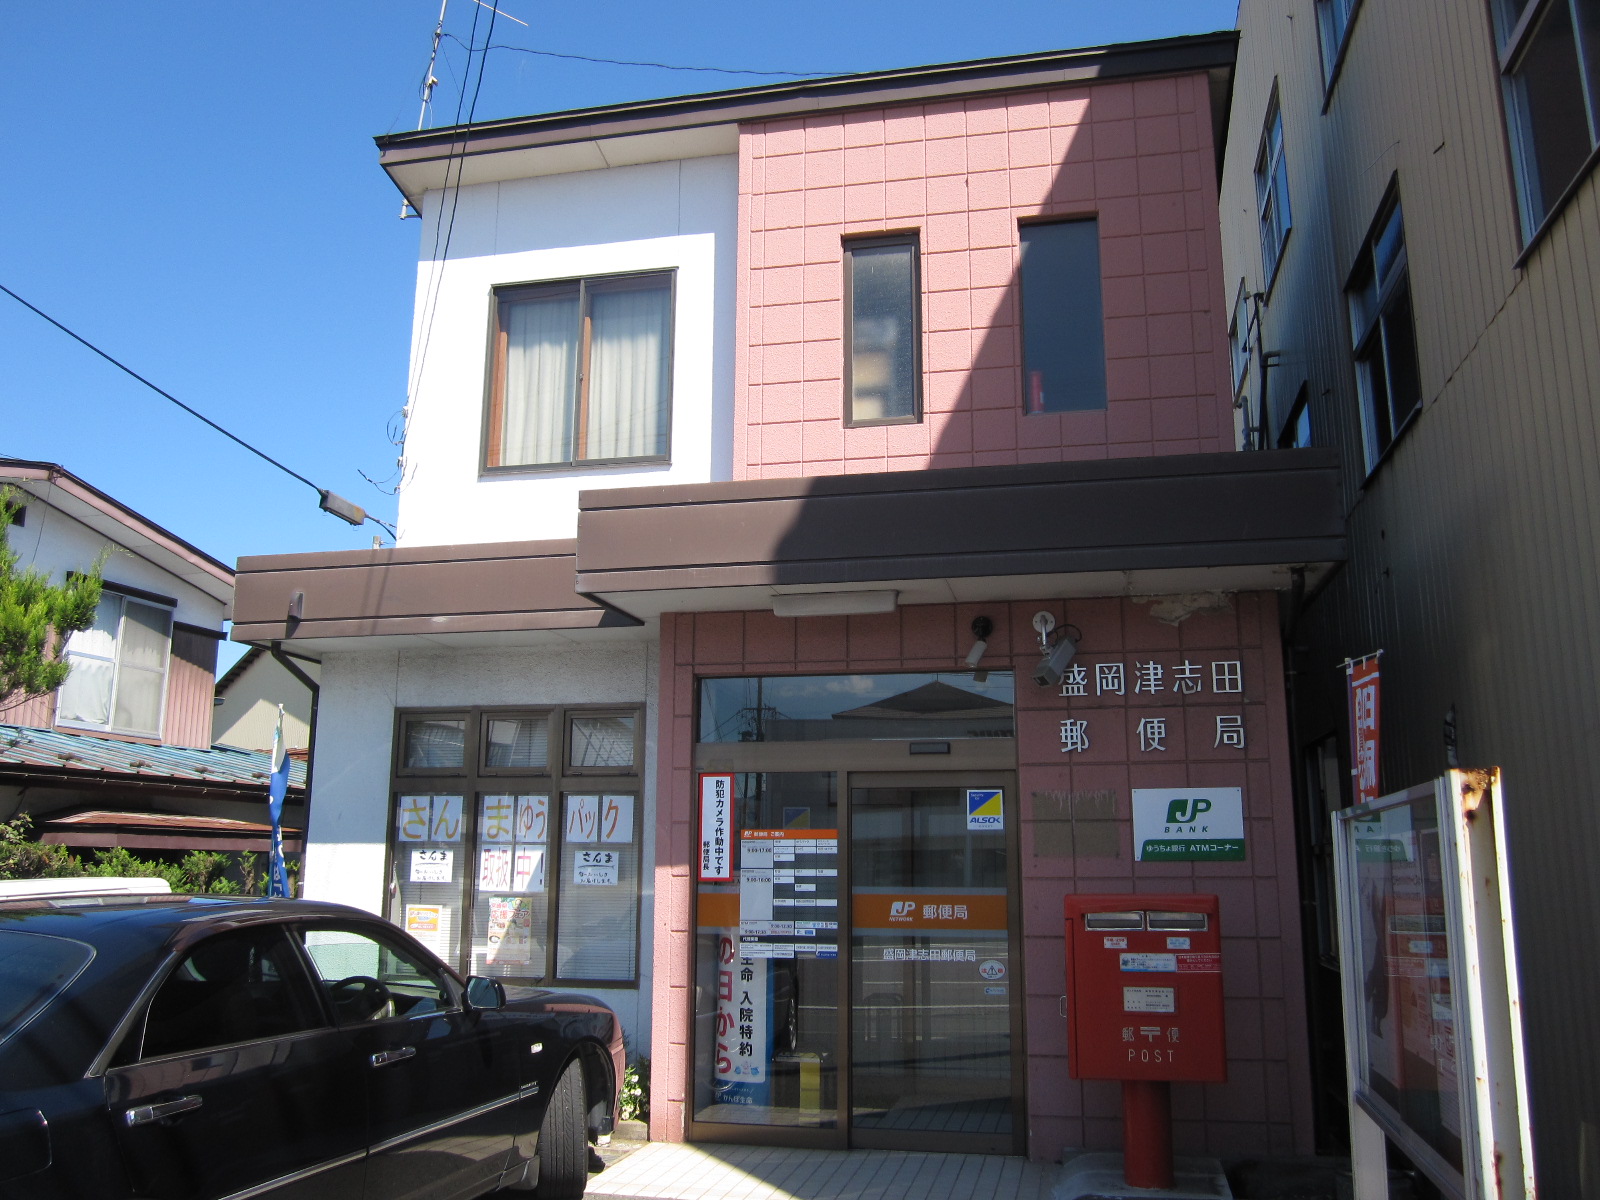 post office. 624m to Morioka Tsushida post office (post office)